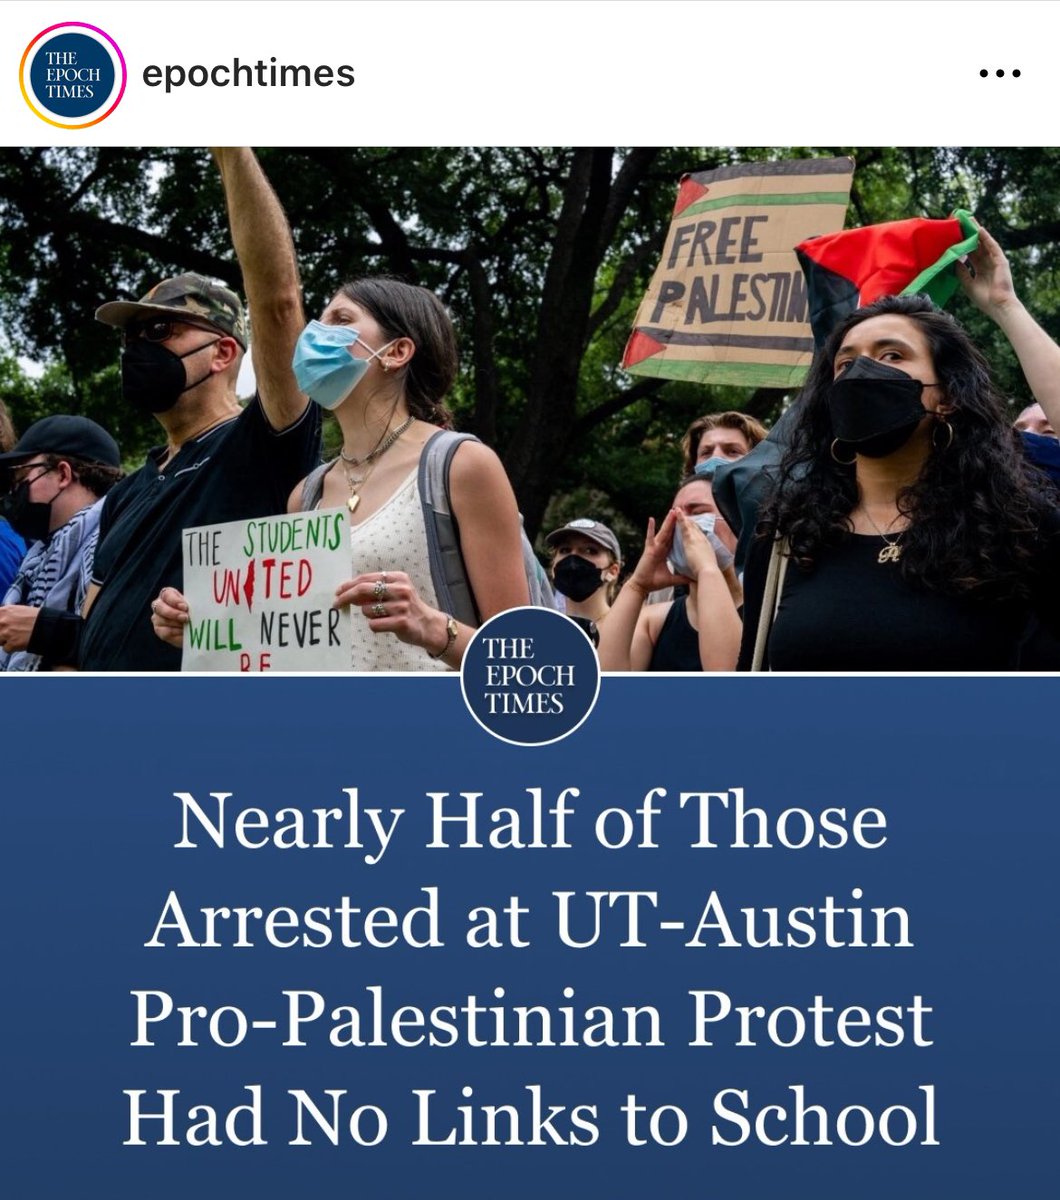 Según reportó @EpochTimes Casi la mitad de los manifestantes pro terroristas arrestados a principios de esta semana en la Universidad de Texas en Austin no estaban afiliados a la universidad. Los agentes del orden arrestaron a 57 manifestantes después de que los participantes